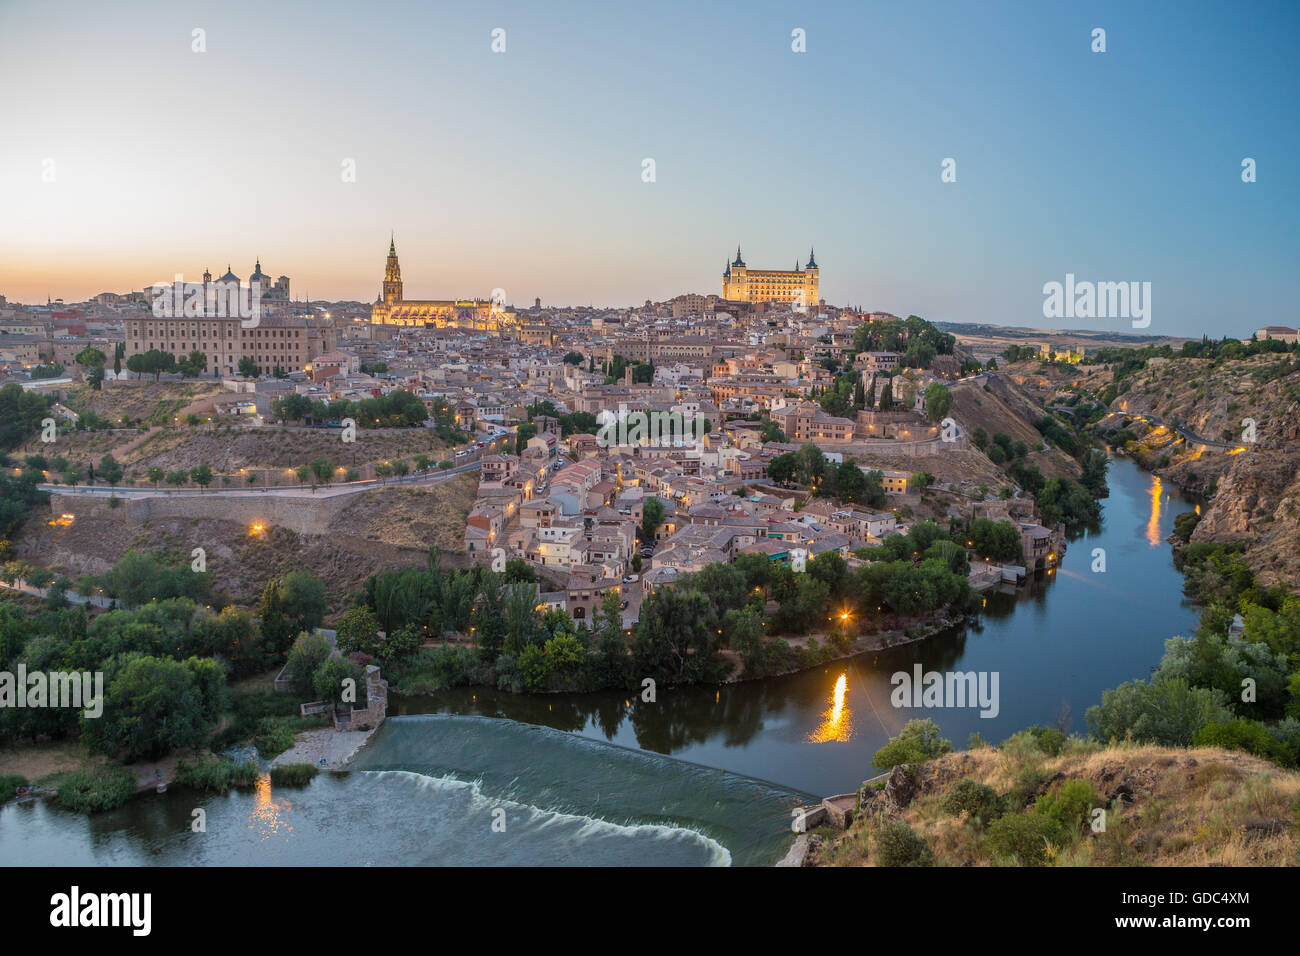 Spagna,la città di Toledo,Tajo River,skyline, Foto Stock